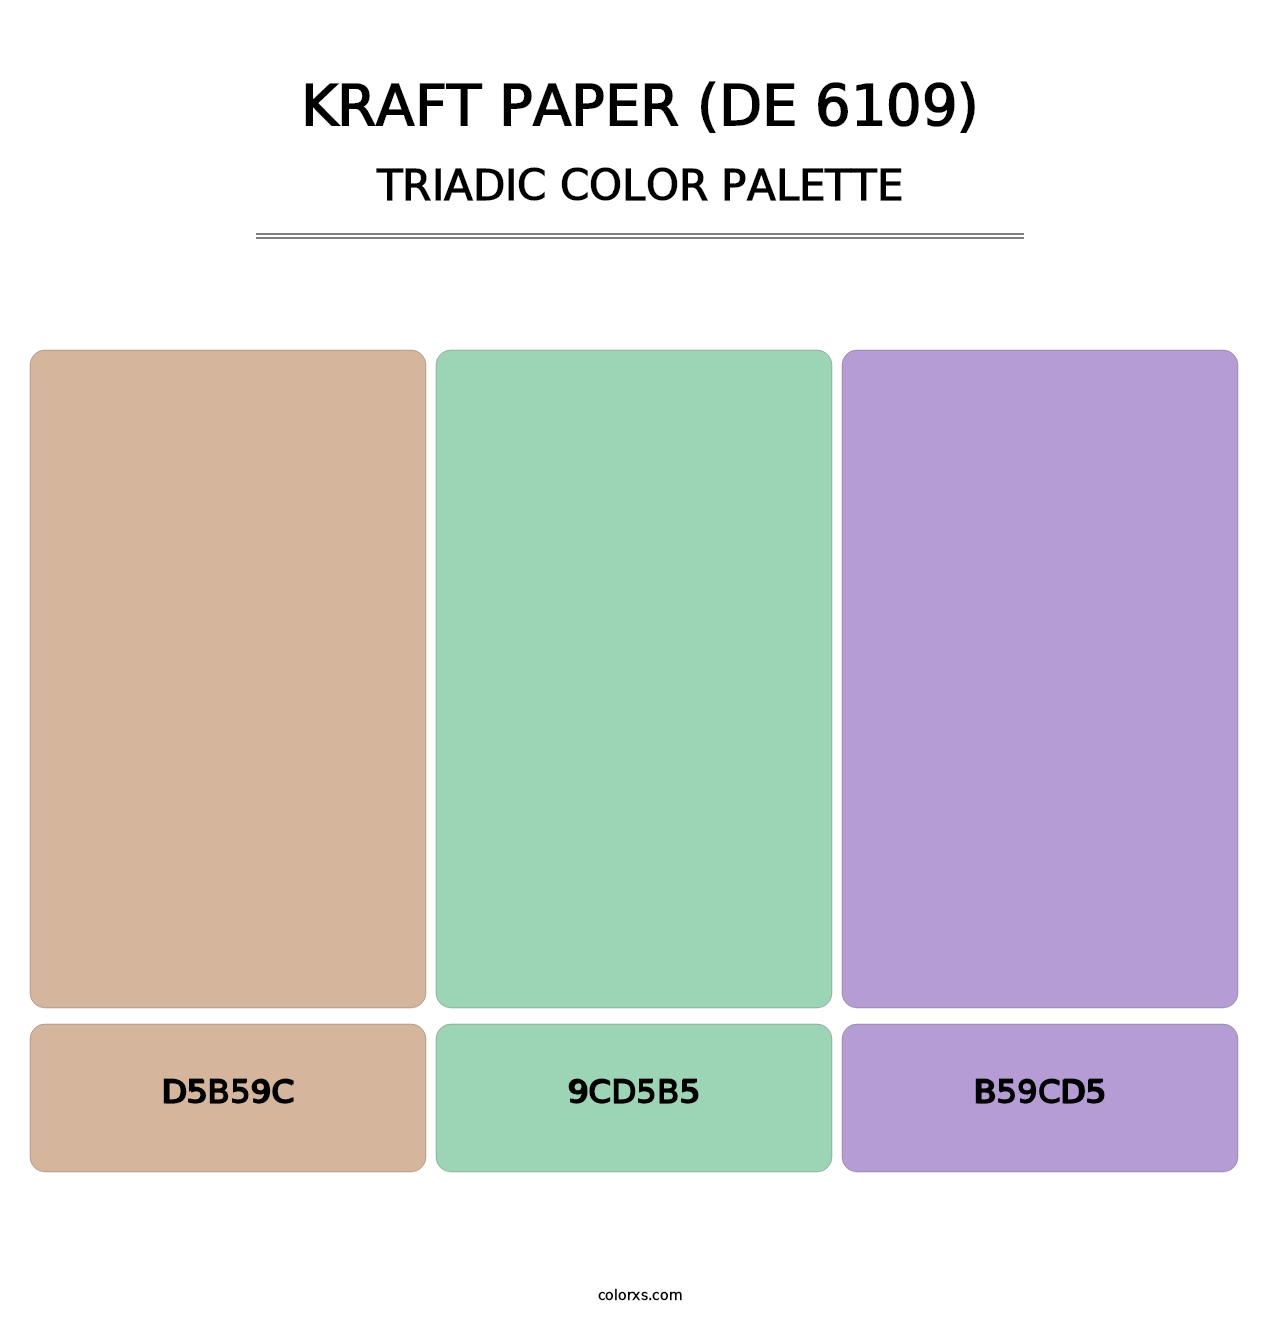 Kraft Paper (DE 6109) - Triadic Color Palette